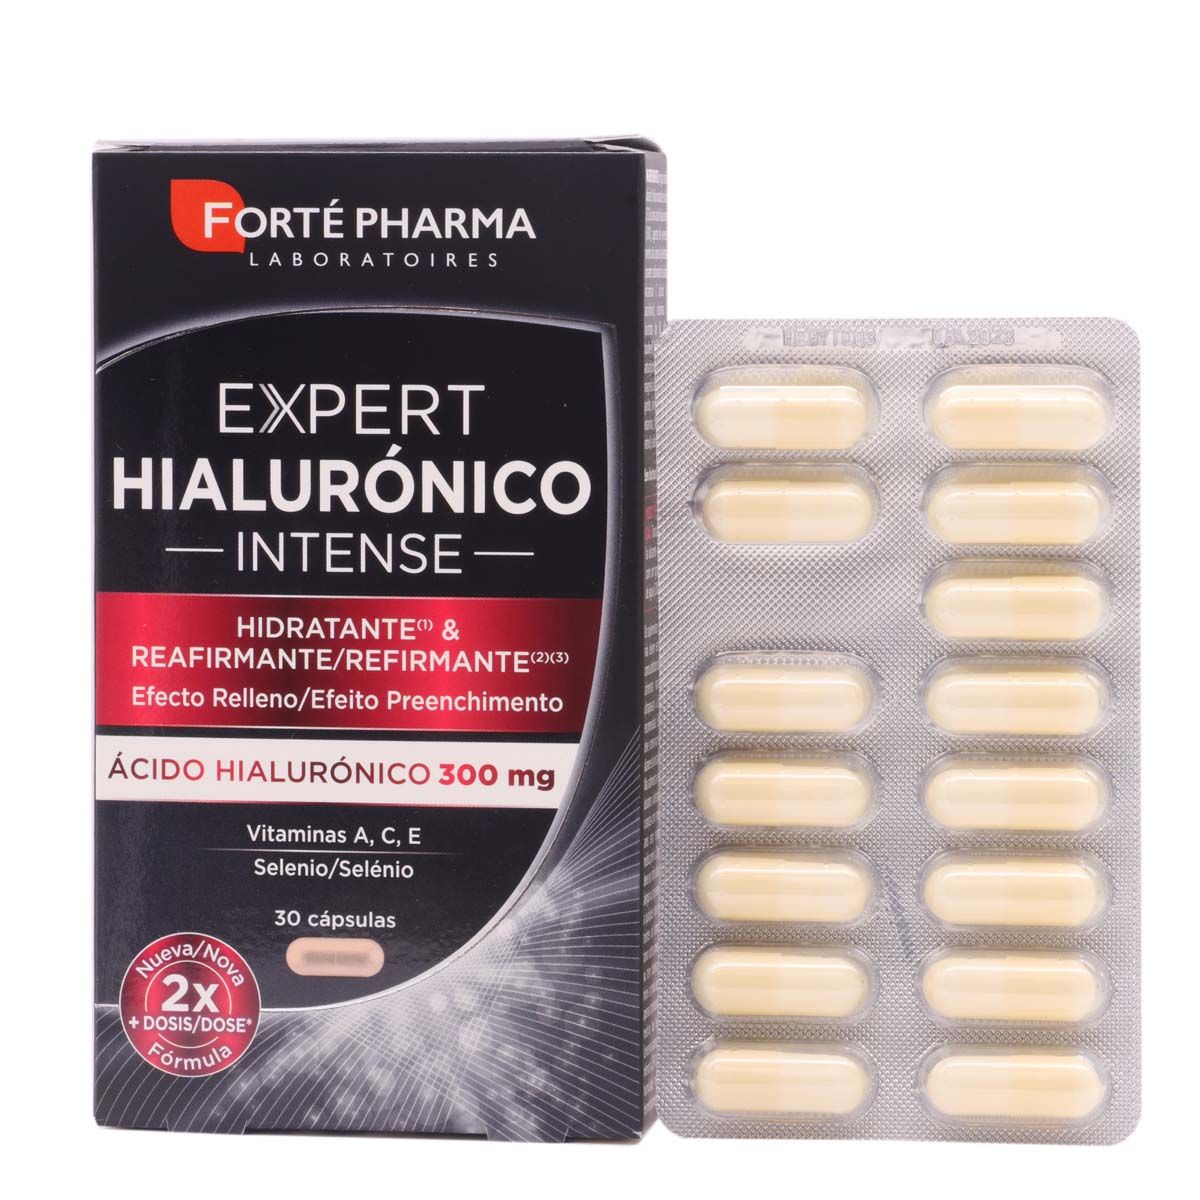 Forté Pharma Expert Hialurónico Intense, 30 cápsulas